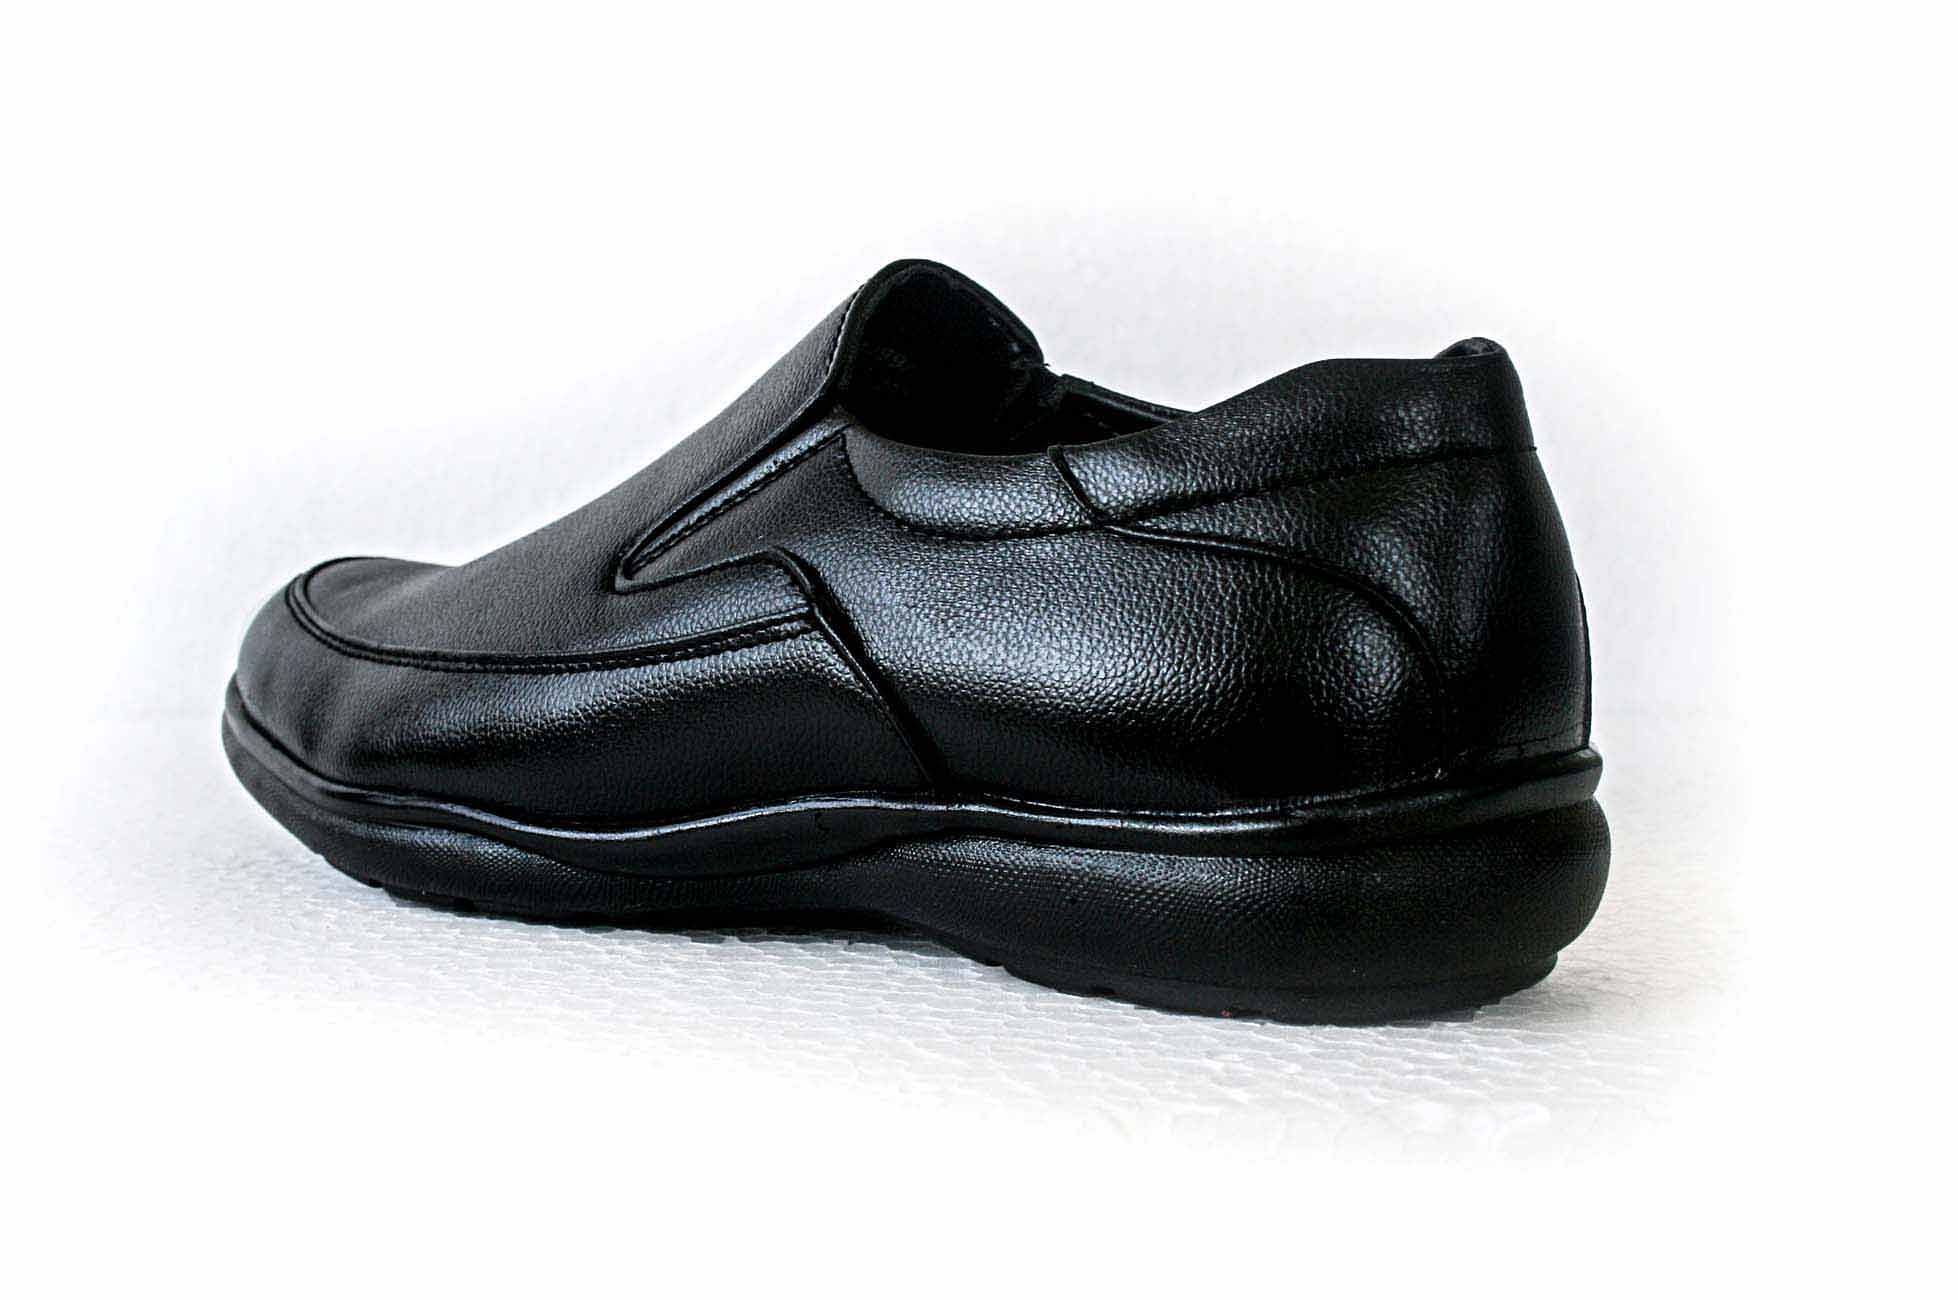 Pair-it Men moccasin Formal Shoes - Black-MN-RYDER207